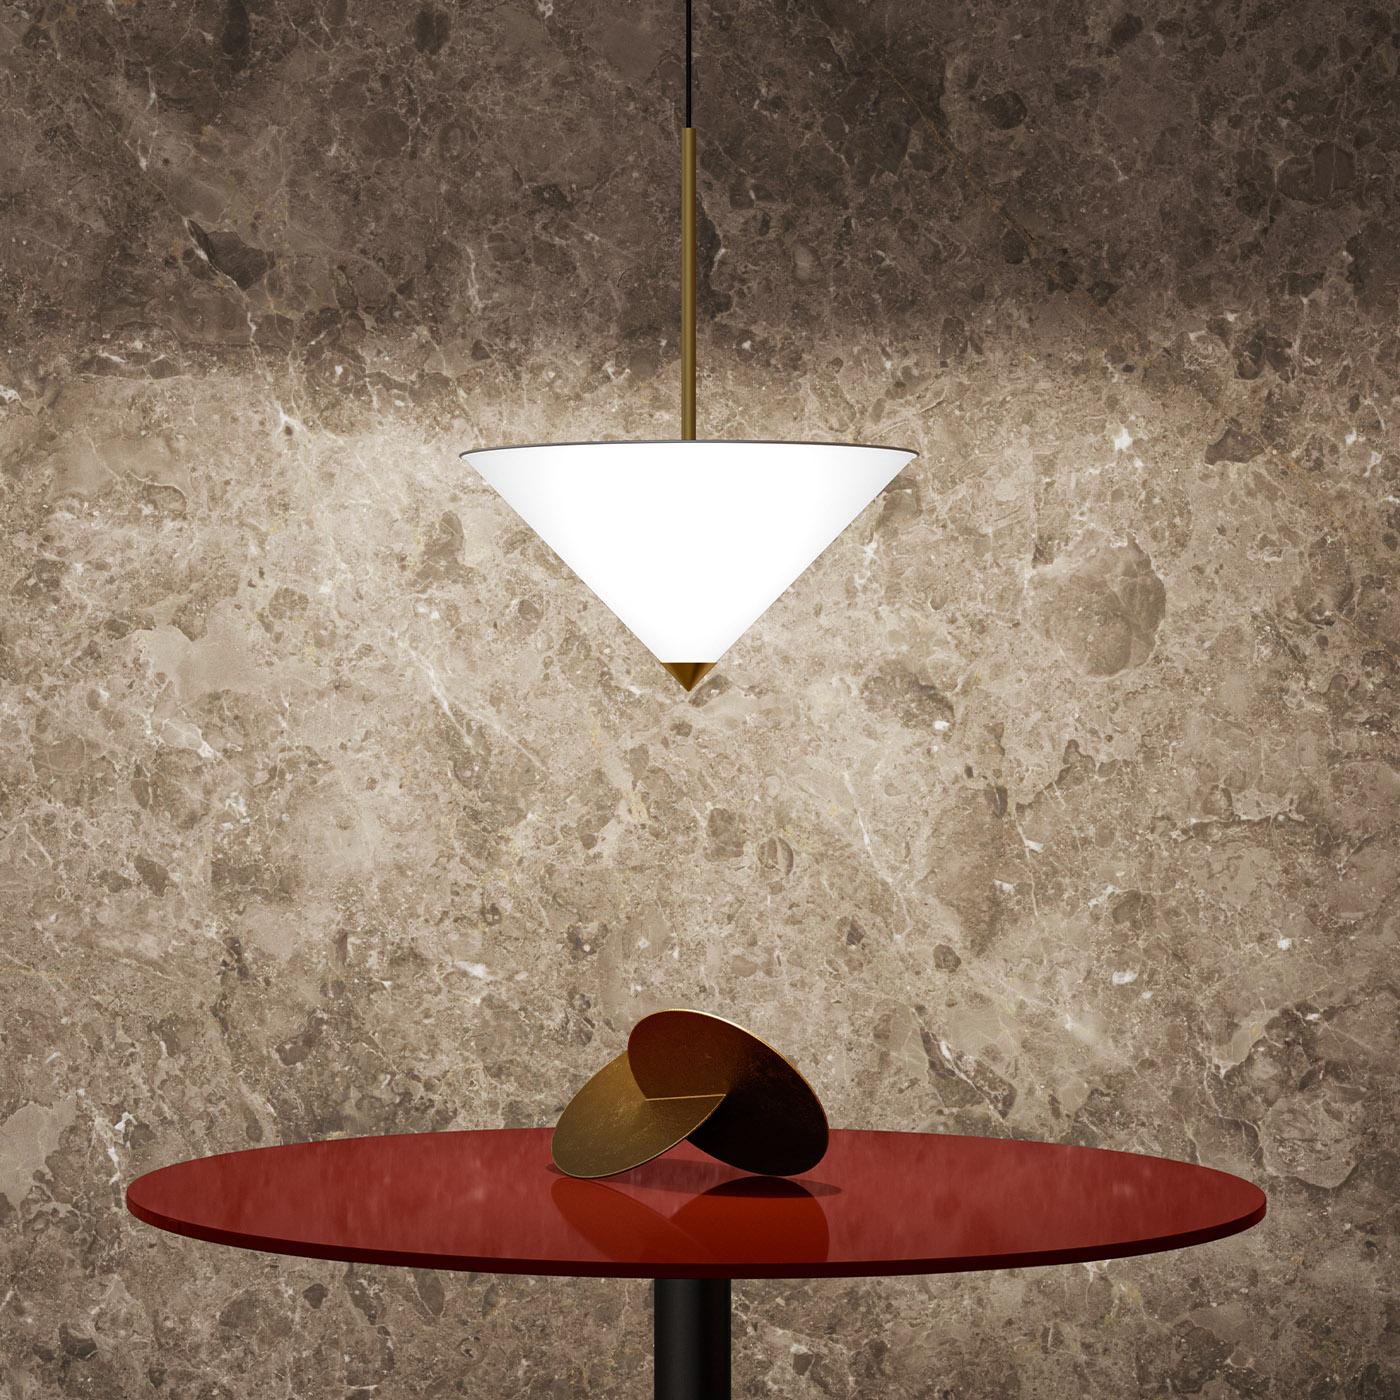 Das extravagante Design von Lorenza Bozzoli macht diese Pendelleuchte zu einer kultigen Ergänzung für eine eklektische, zeitgenössische Einrichtung. Sie hängt an einer Rosette aus satiniertem Nickel und hat einen konischen Schirm aus satiniertem